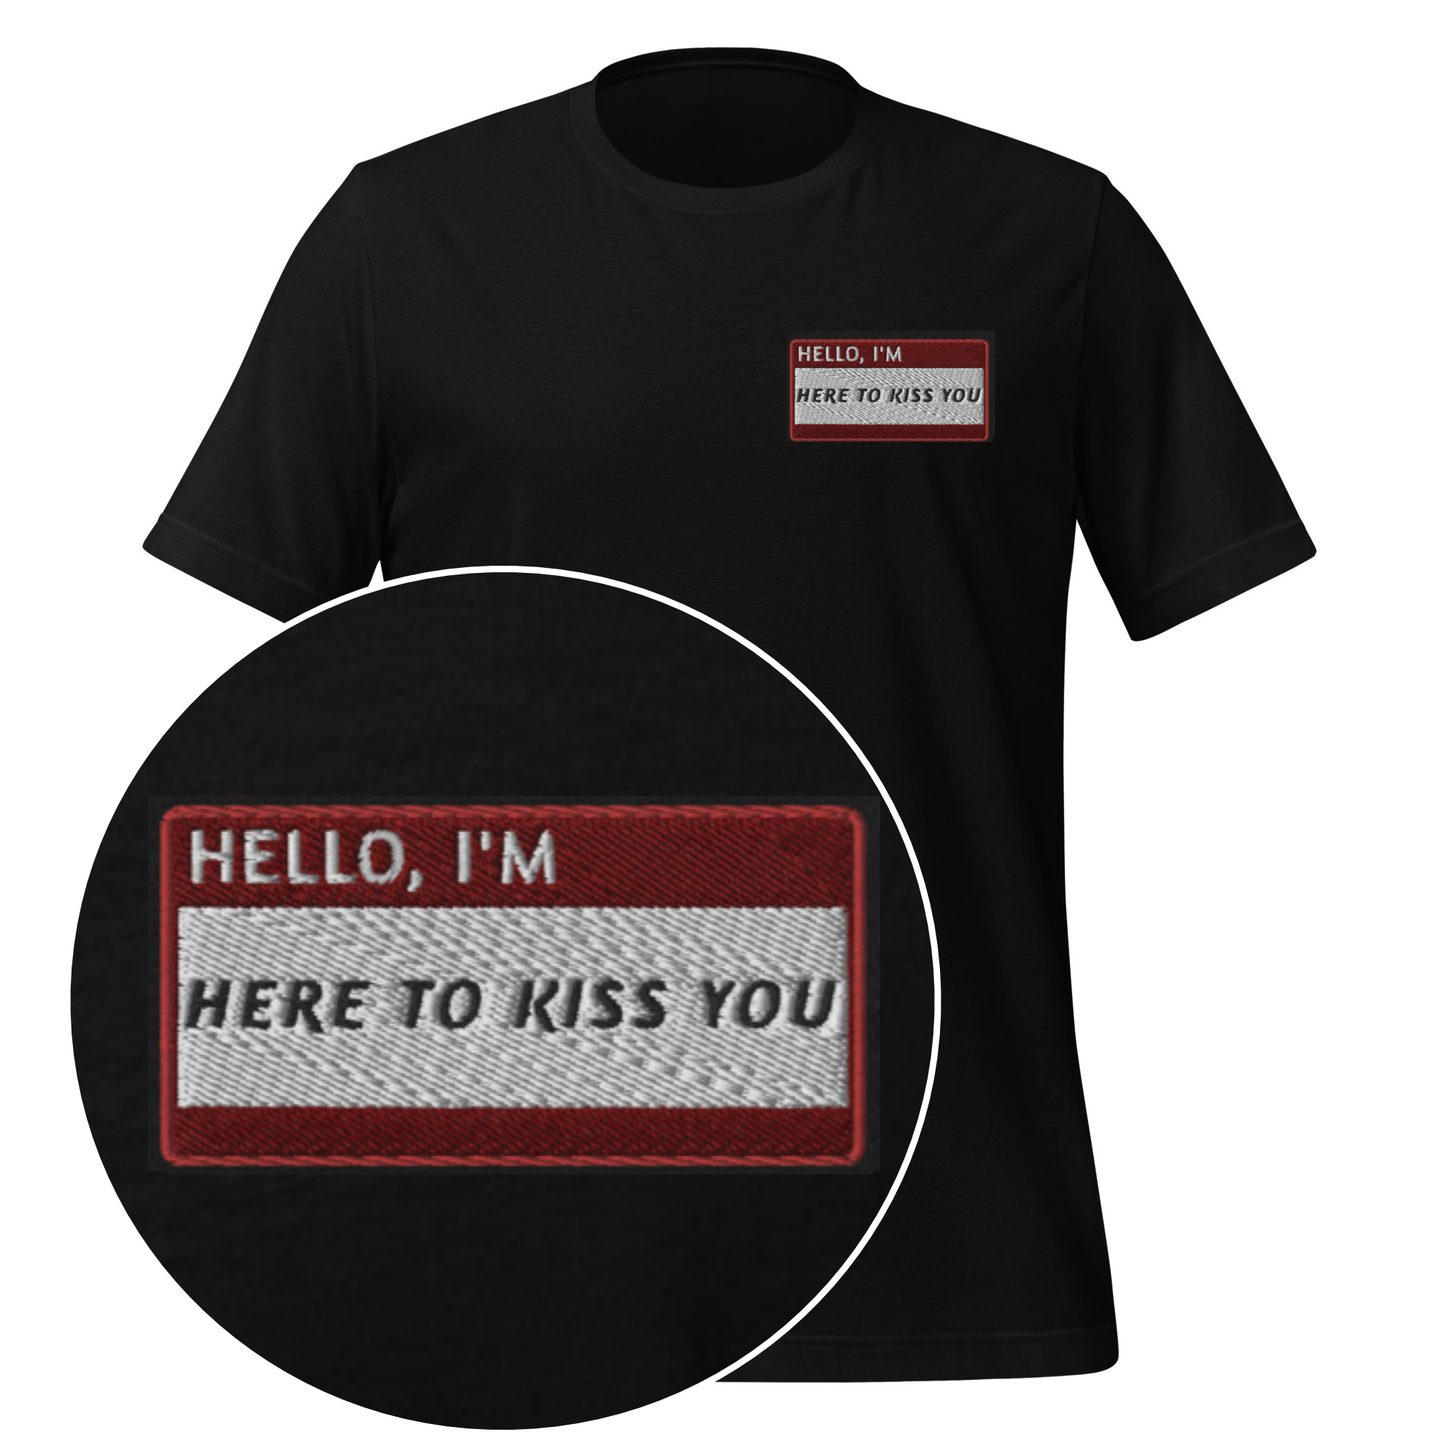 HELLO I'M HERE TO KISS YOU - Name Tag T-Shirt